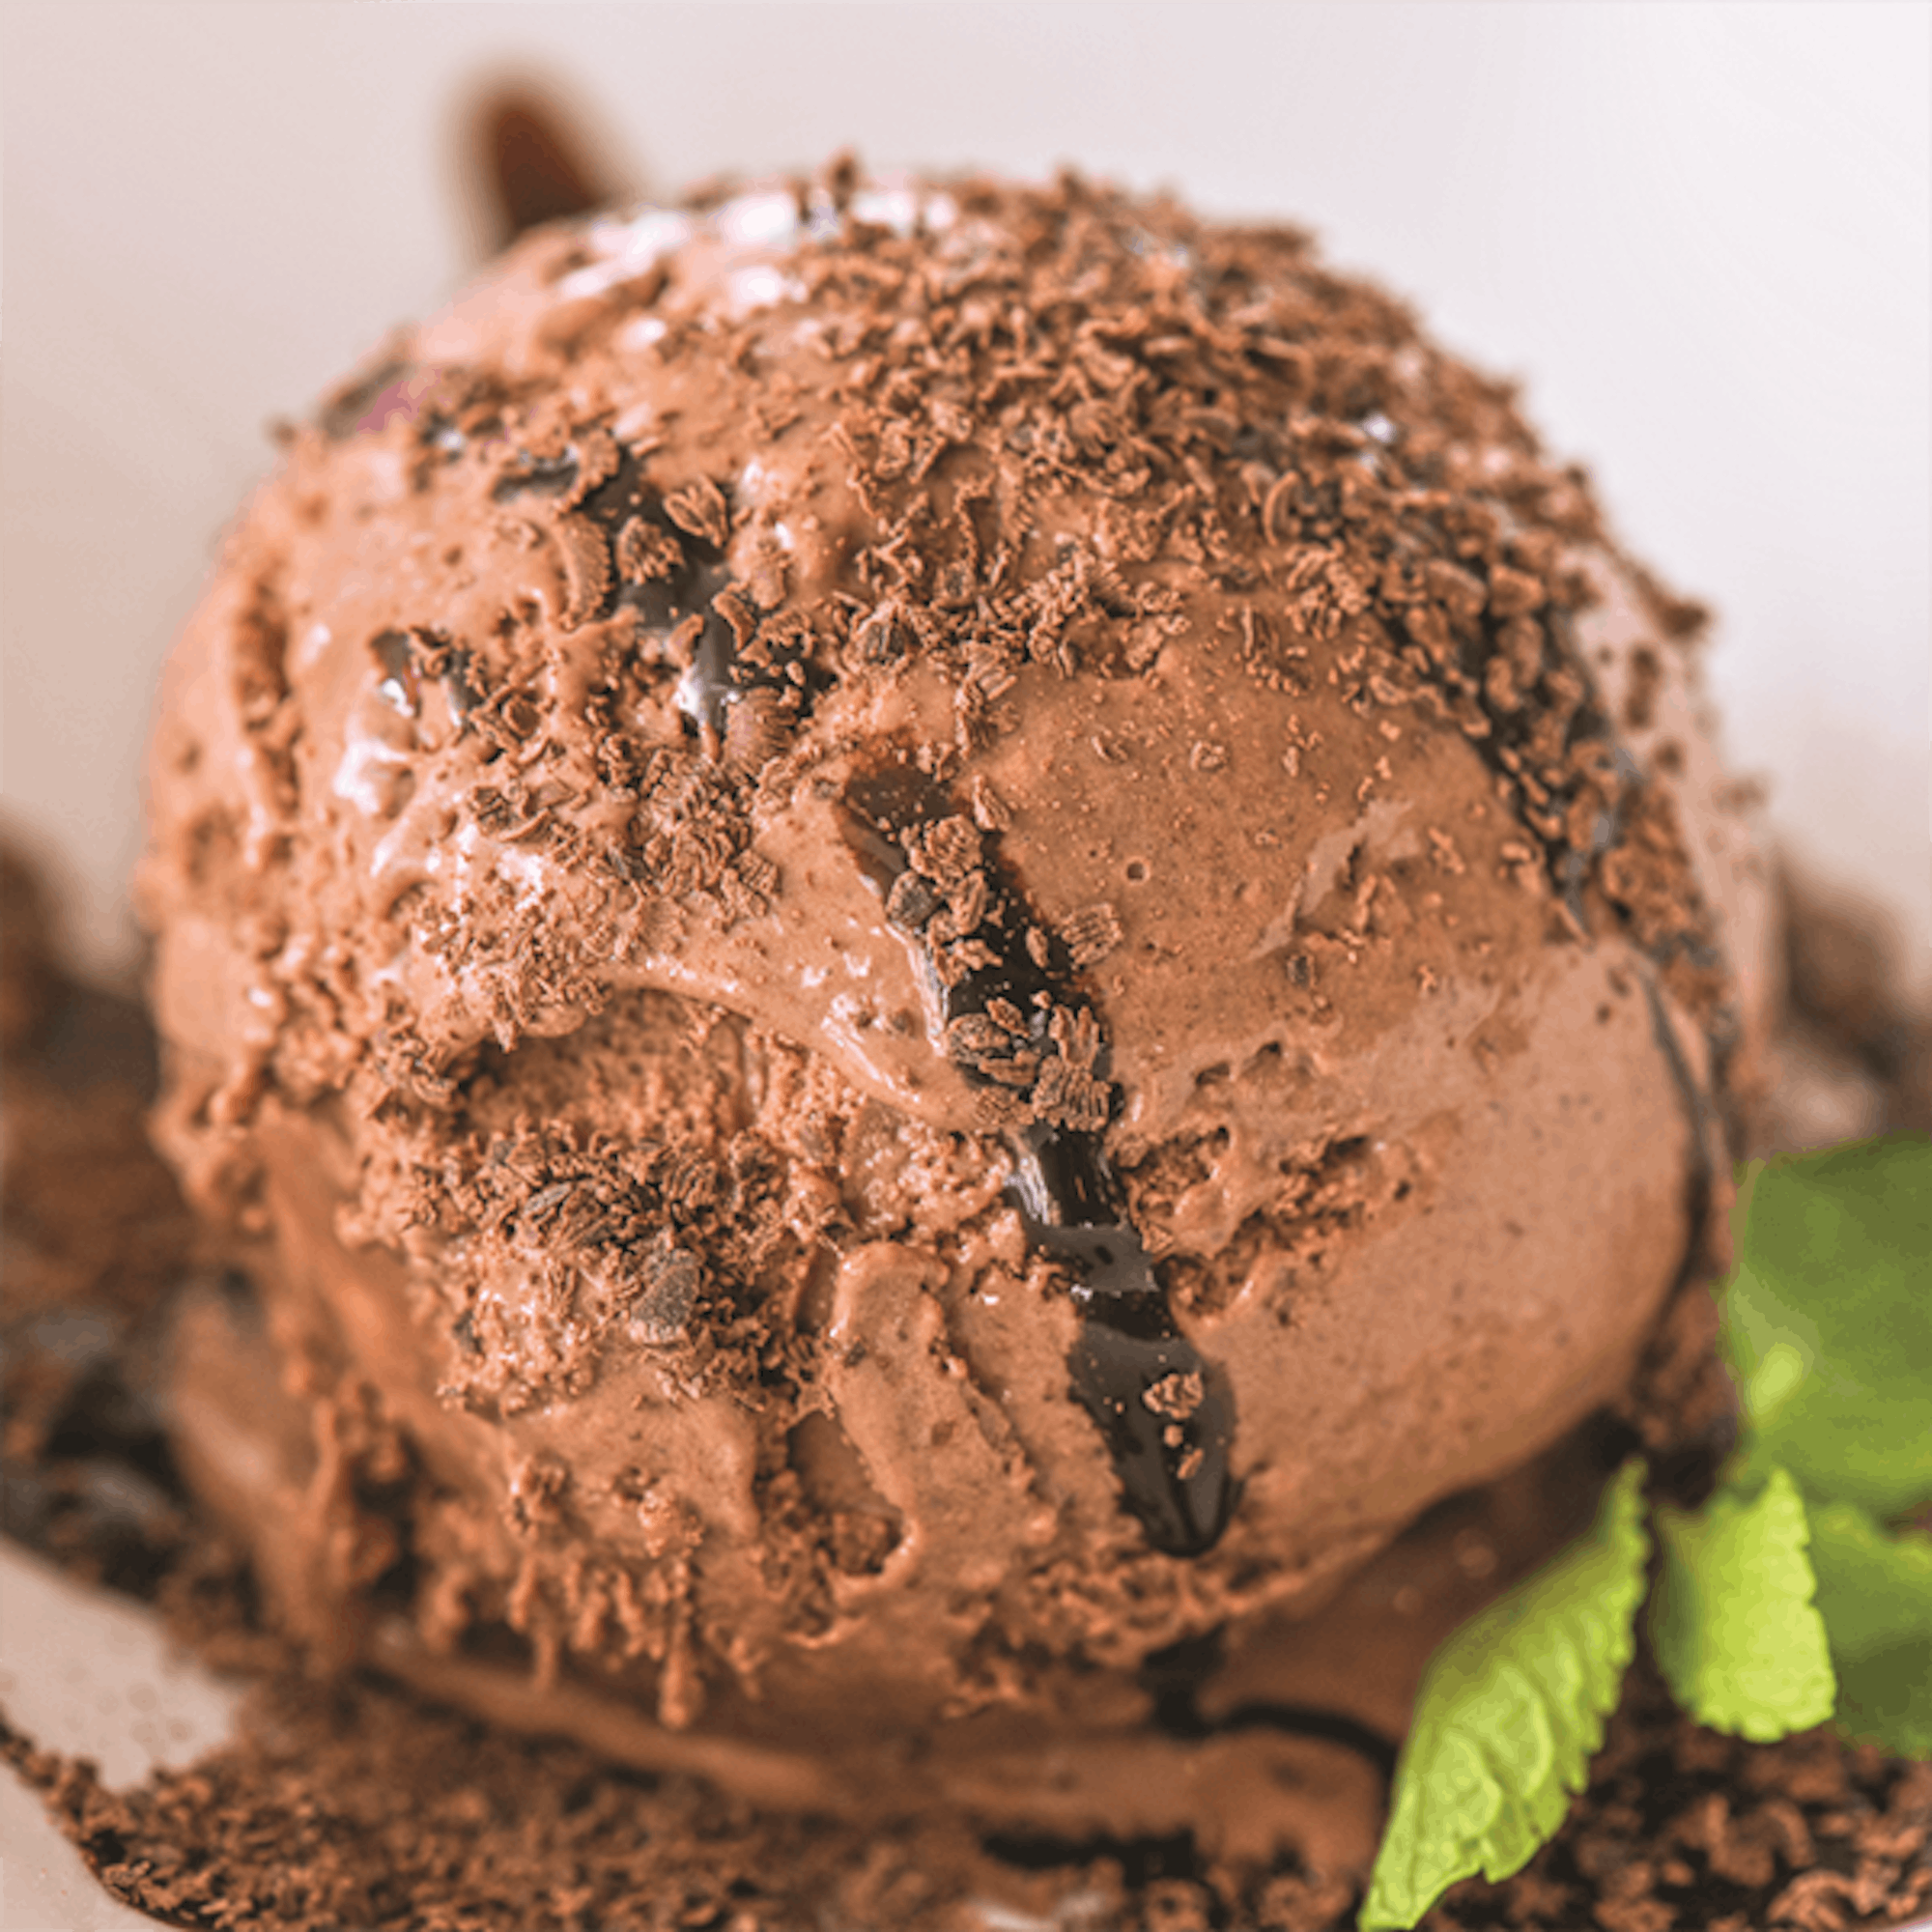 Indulgent Chocolate Ice Cream Recipe